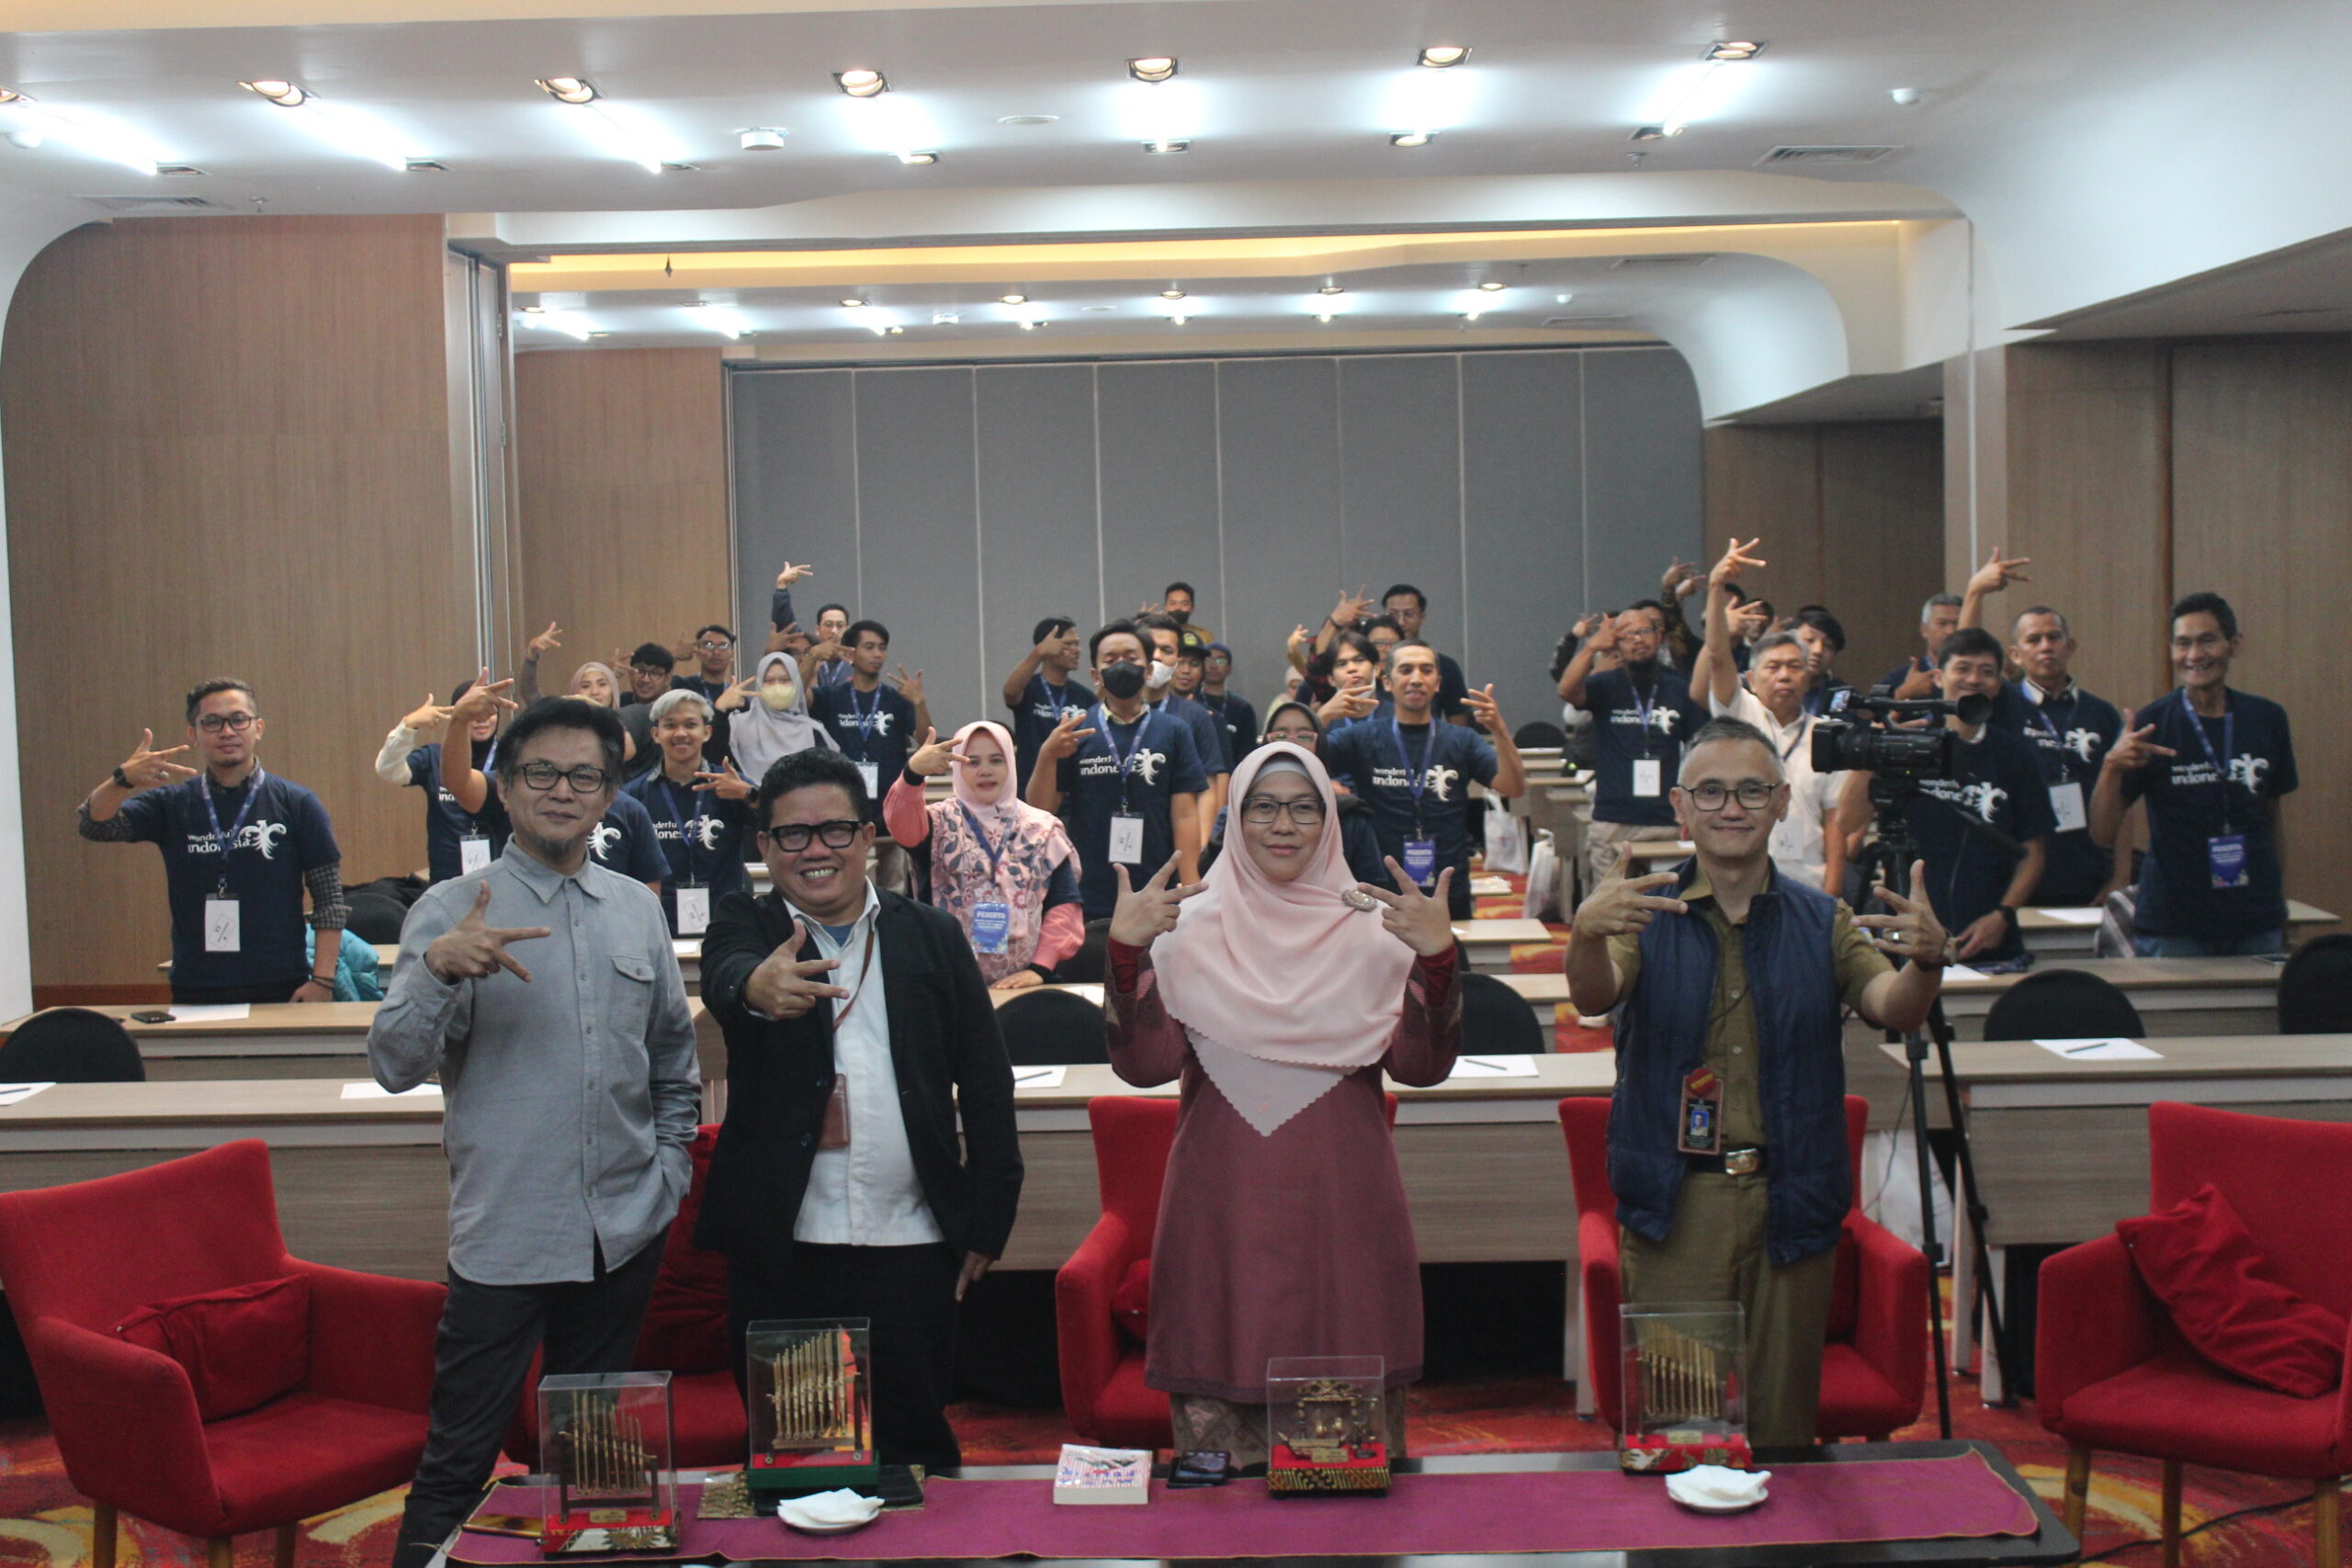 Kemenparekraf menghadirkan program AKSILARASI "Aksi Selaras dan Sinergi" dalam mendukung pengembangan industri kreatif musik di Kota Bandung.